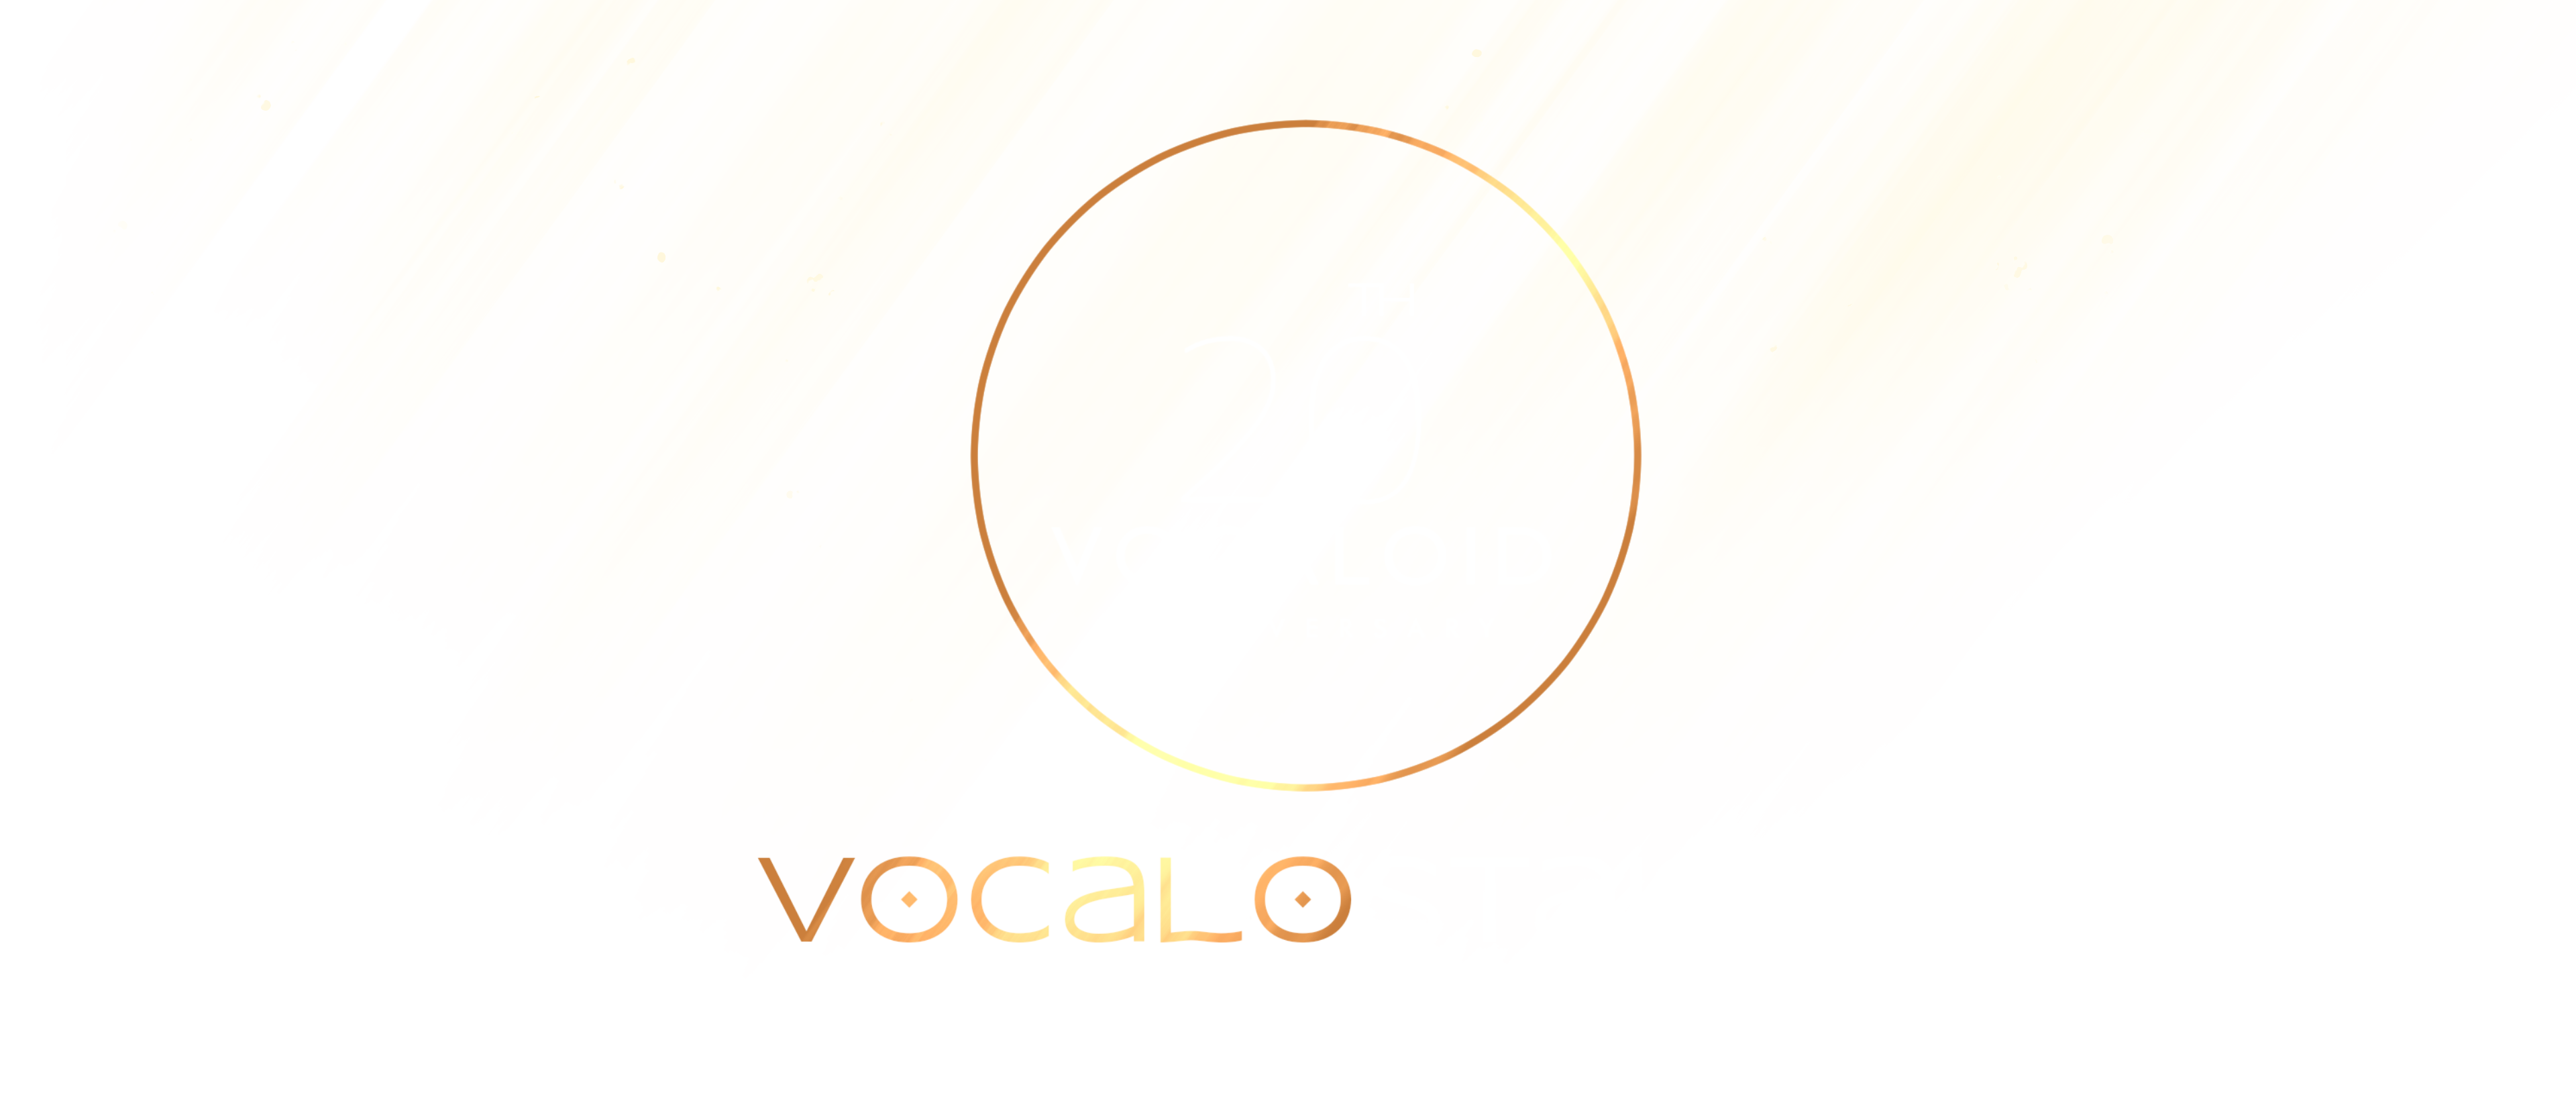 Vocalostalgia • 20th Anniversary Vocaloid Zine